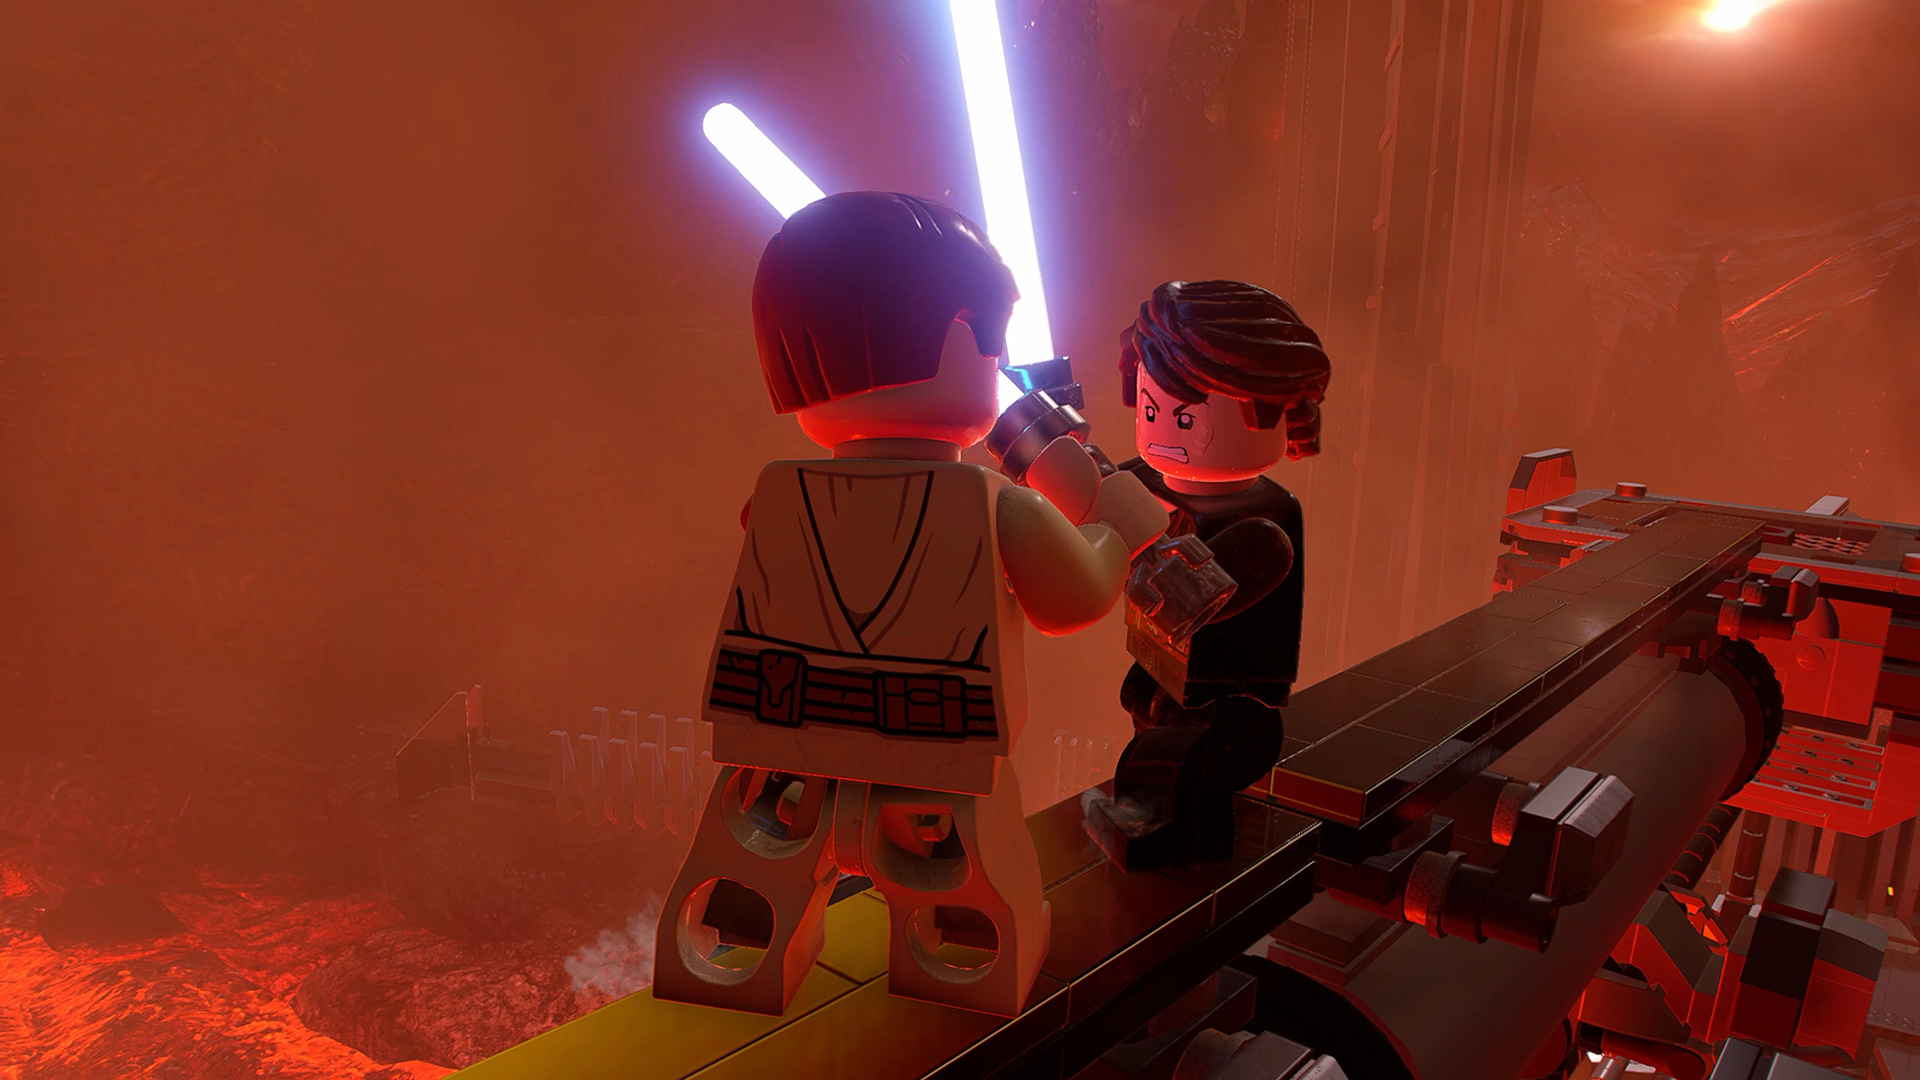 Jogo Star Wars Lego Computador Ação Dvd Pc Game Mídia Física